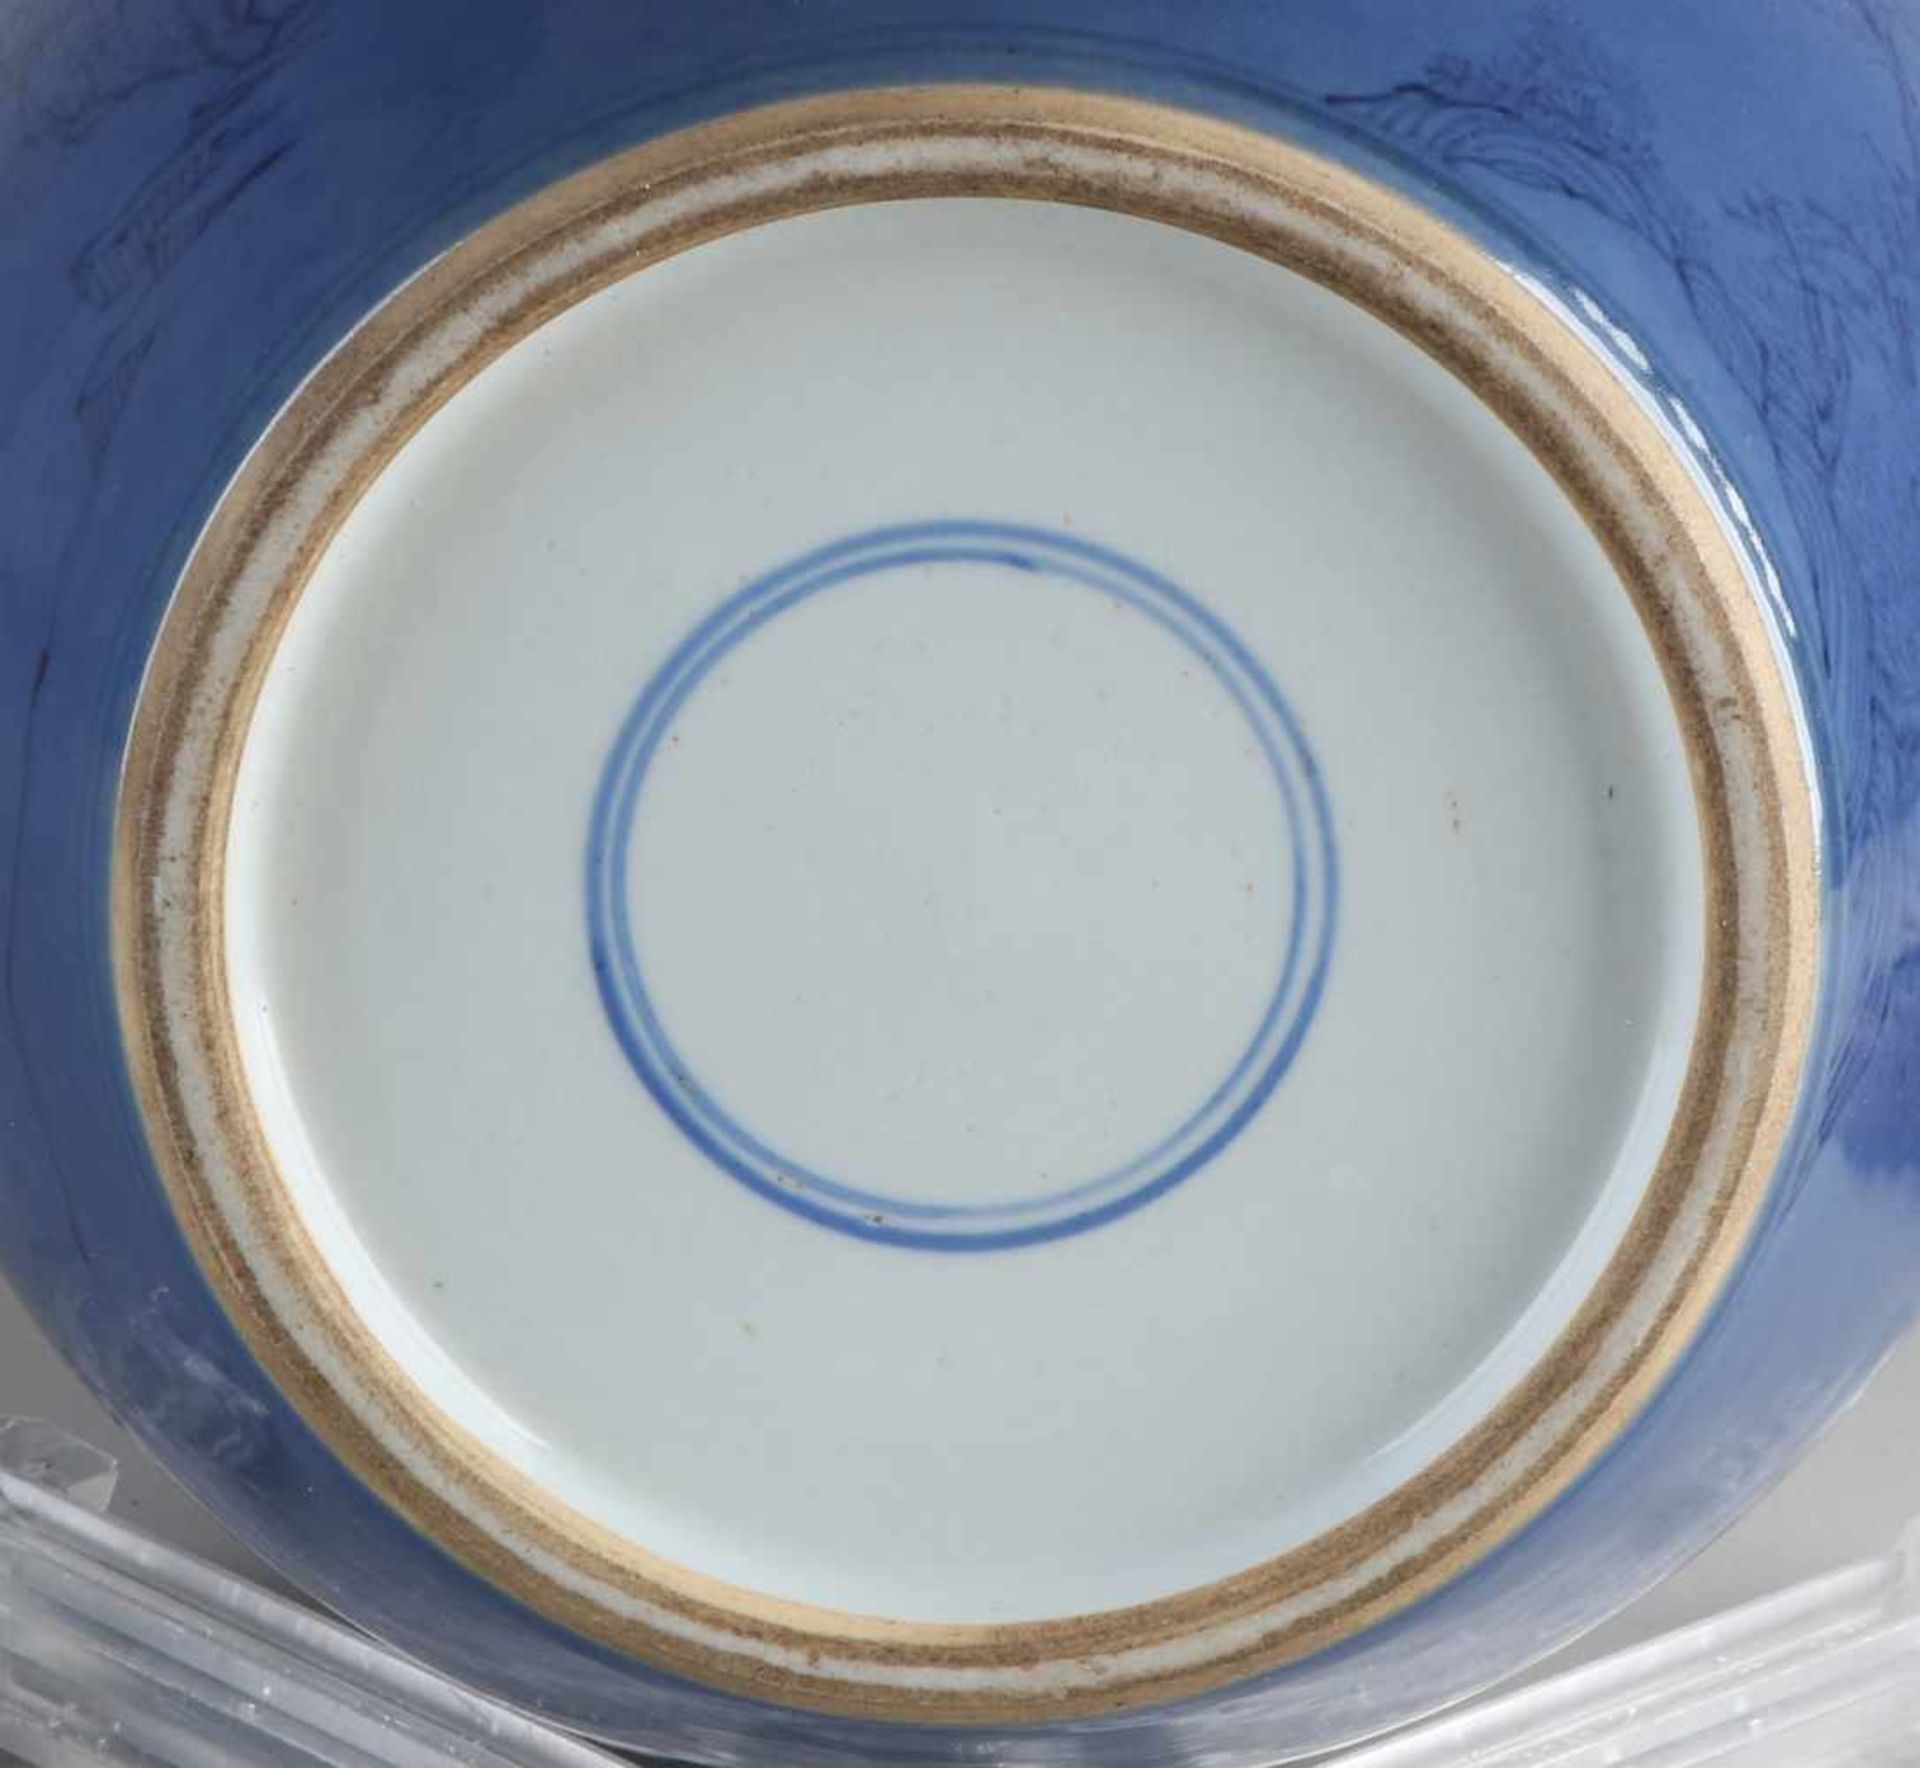 Großes chinesisches Ingwerglas aus Porzellan mit Holzdeckel, blauer Glasur und dekorativen Figuren - Bild 3 aus 3